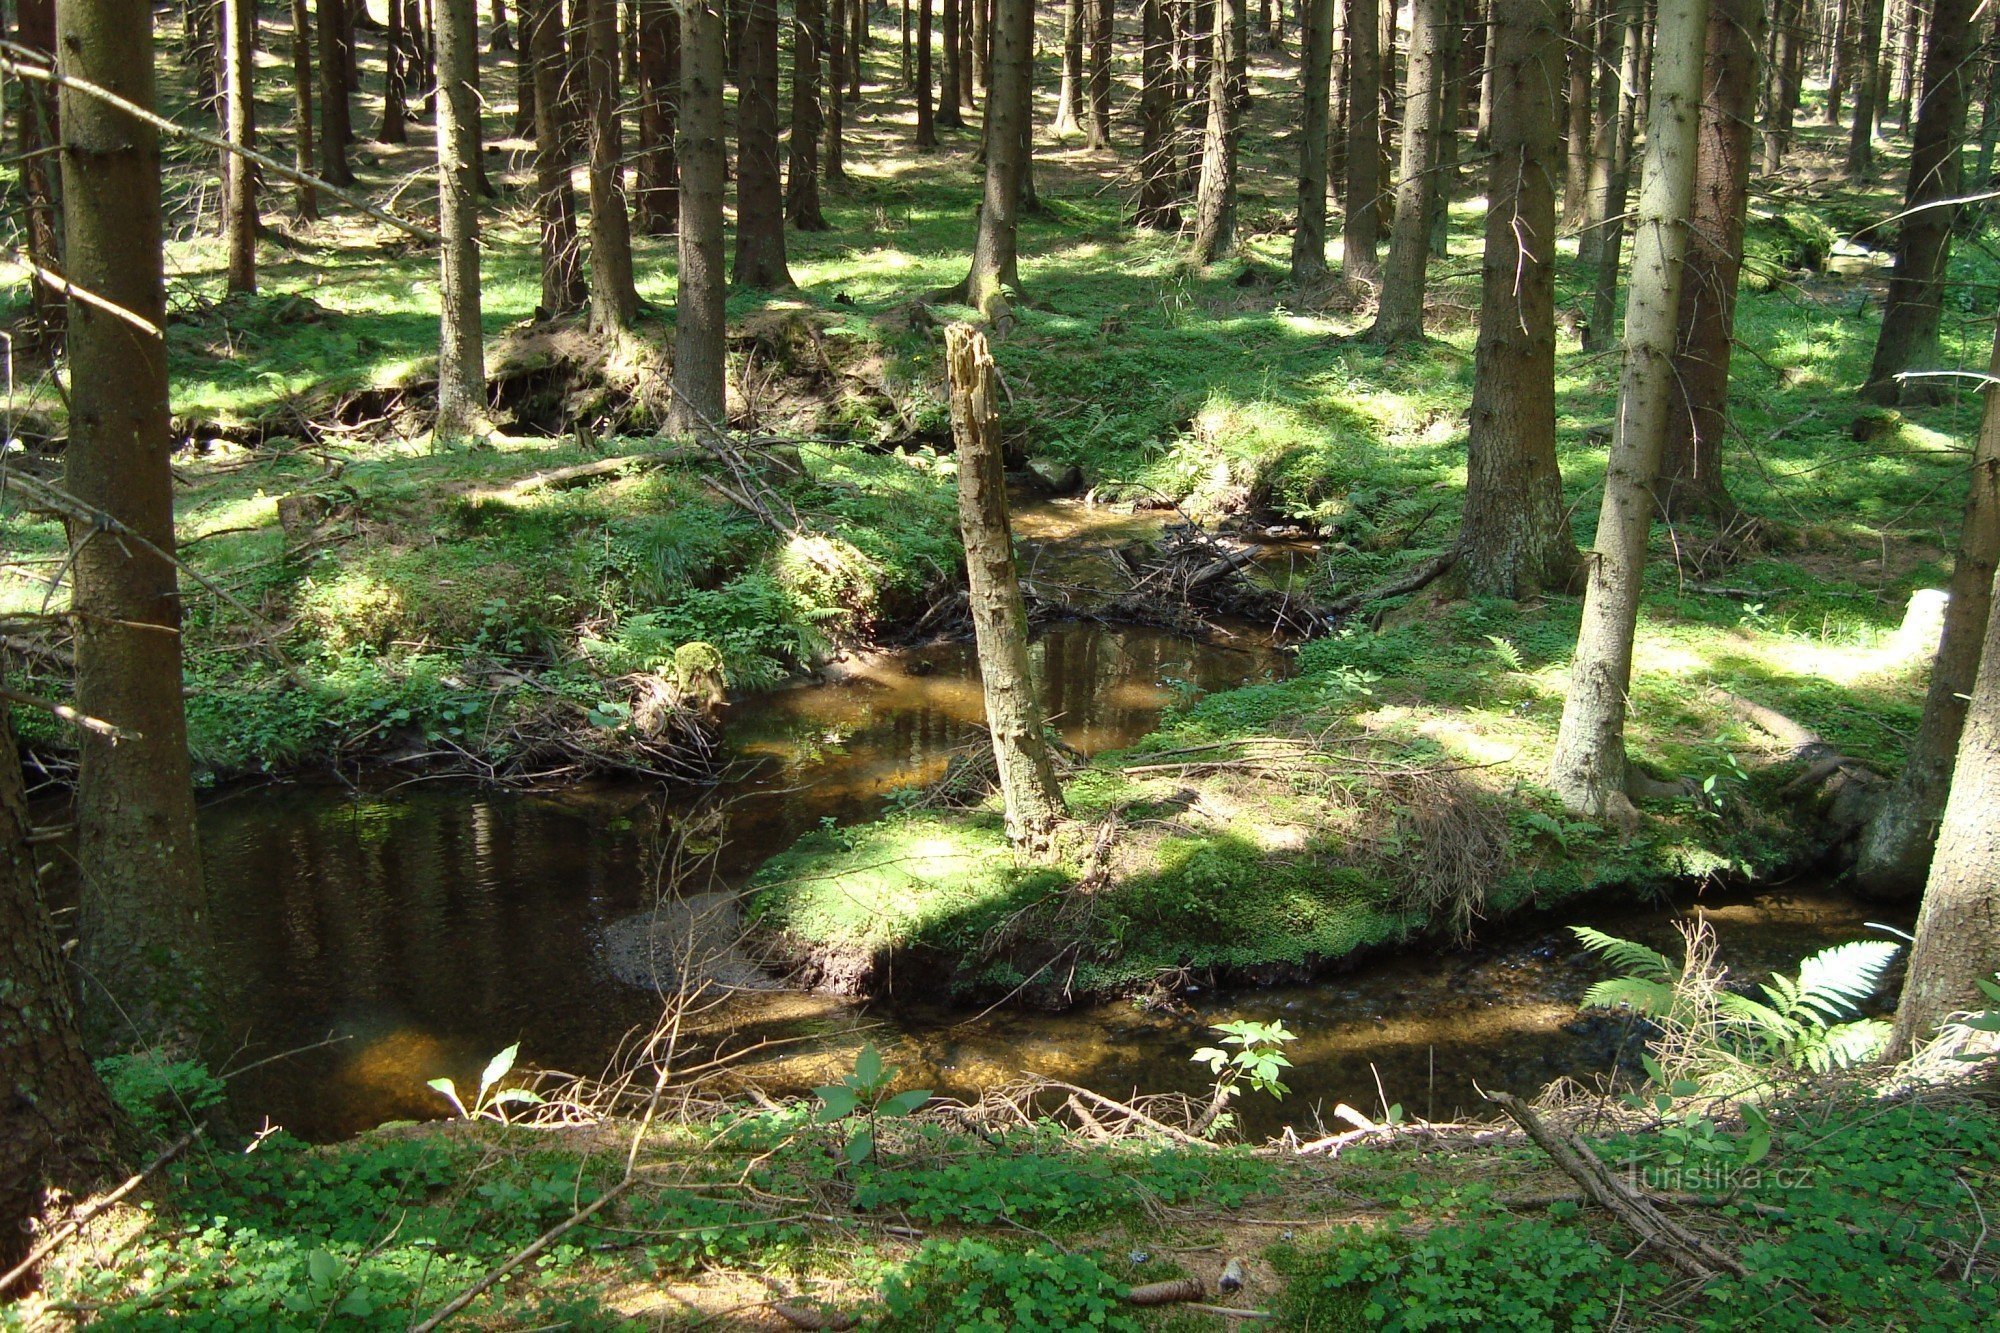 Huťský potok - un monumento natural